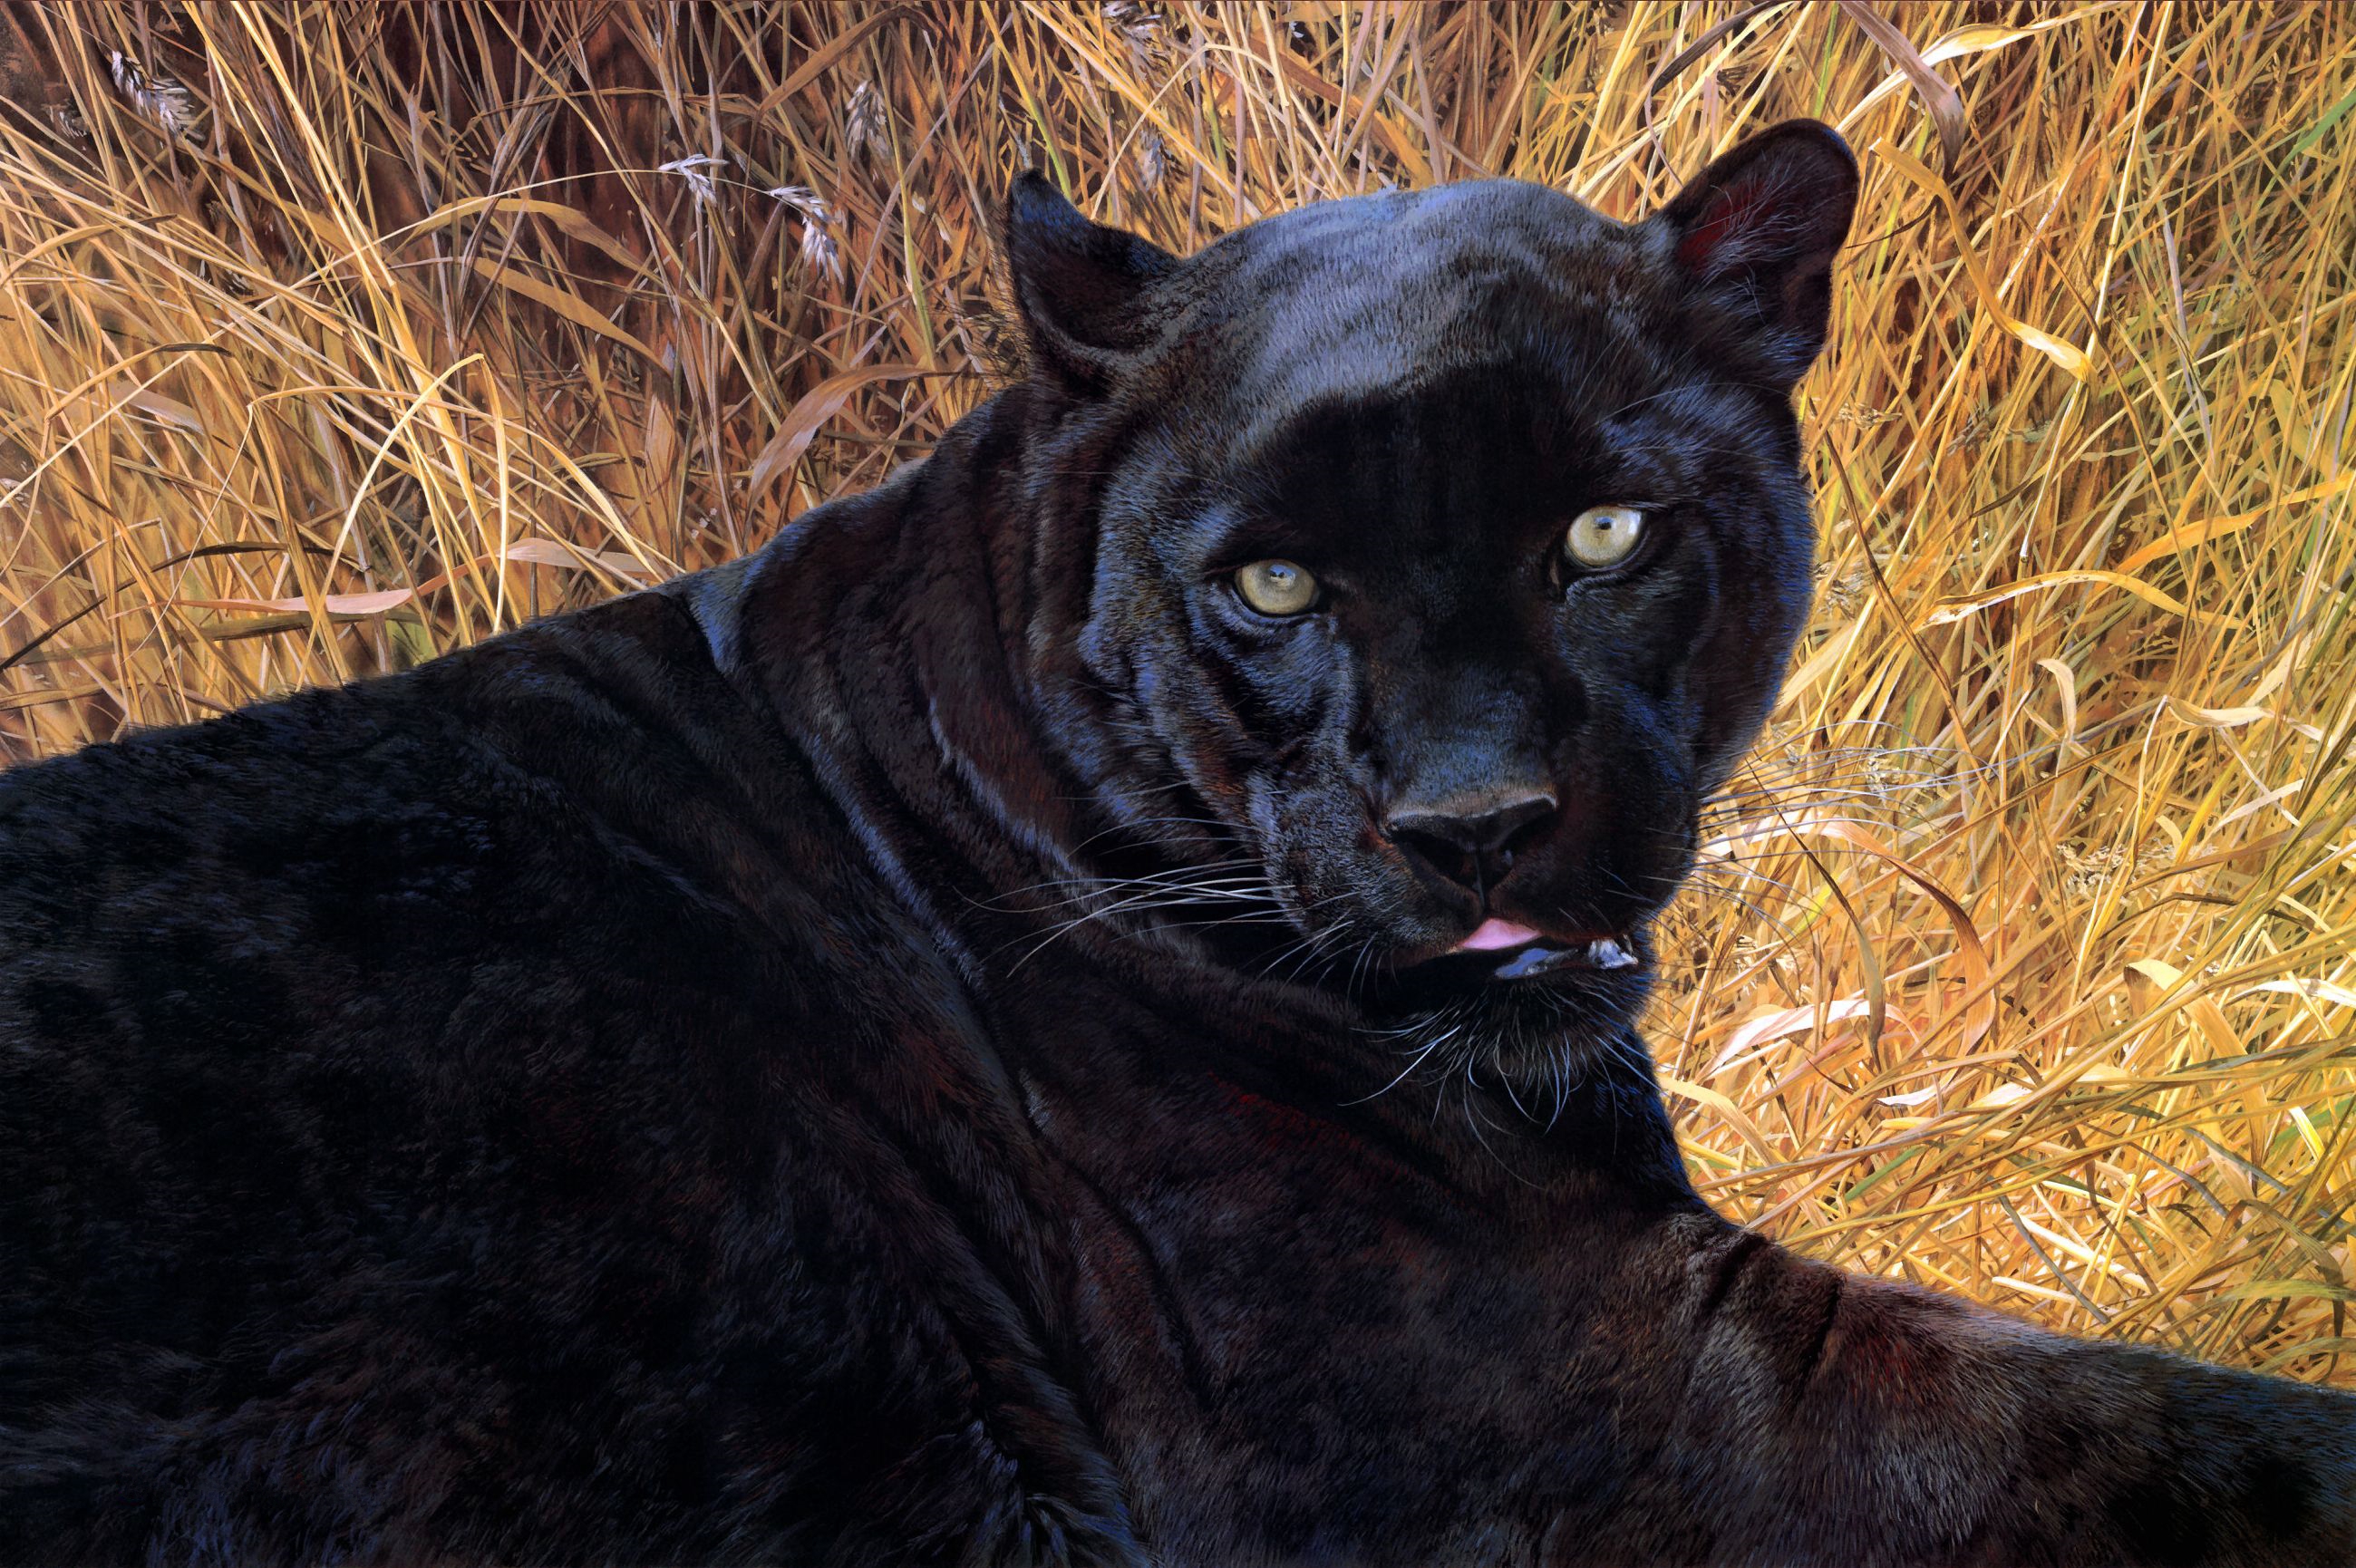 Скачать обои бесплатно Животные, Кошки, Черная Пантера картинка на рабочий стол ПК